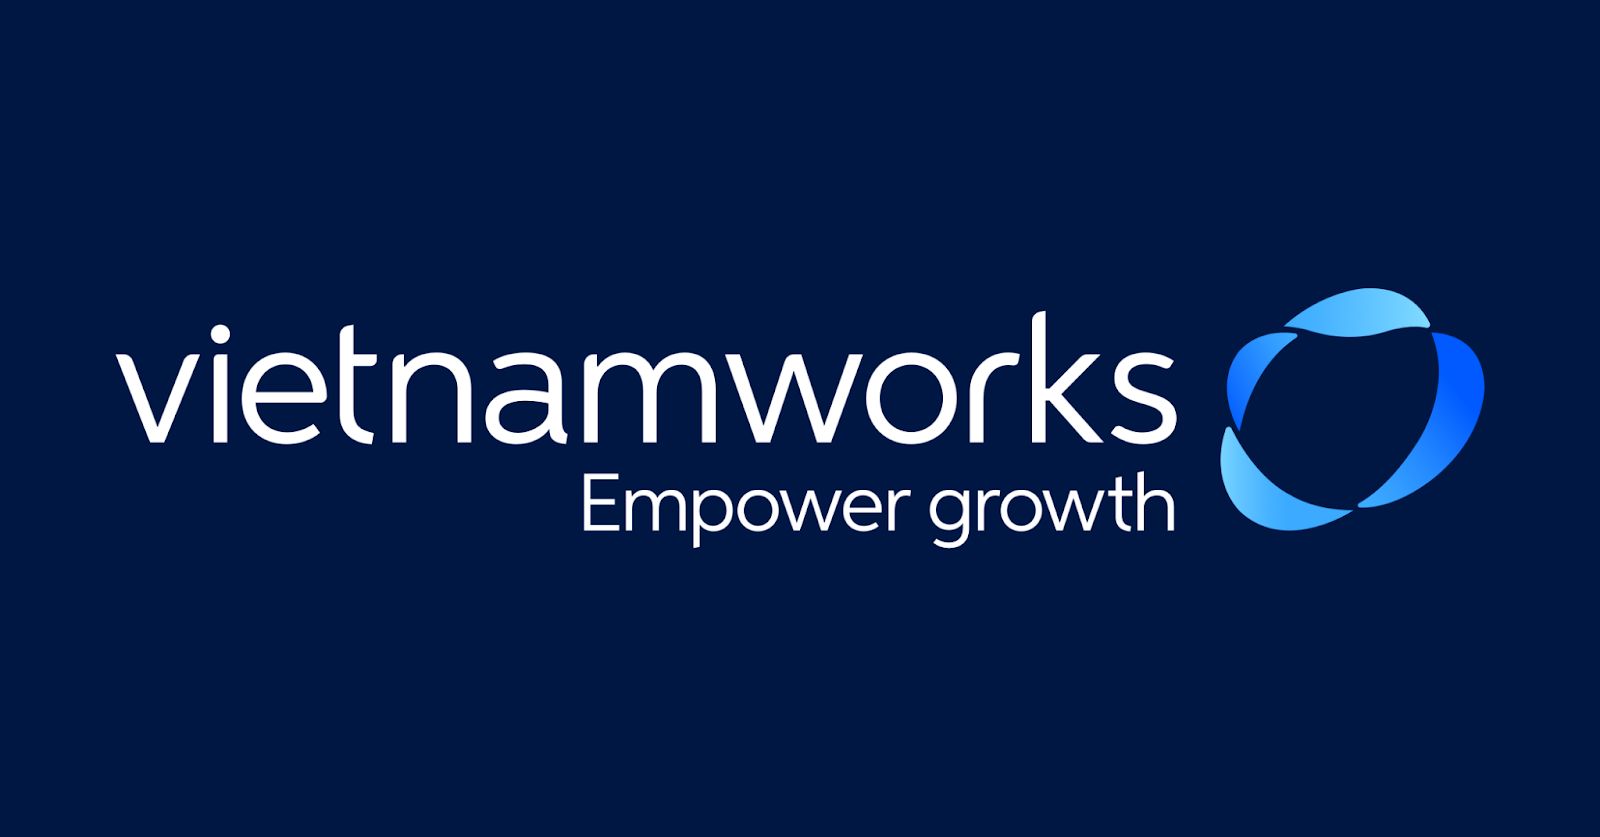 VietnamWorks là Nền tảng tuyển dụng và tư vấn nghề nghiệp